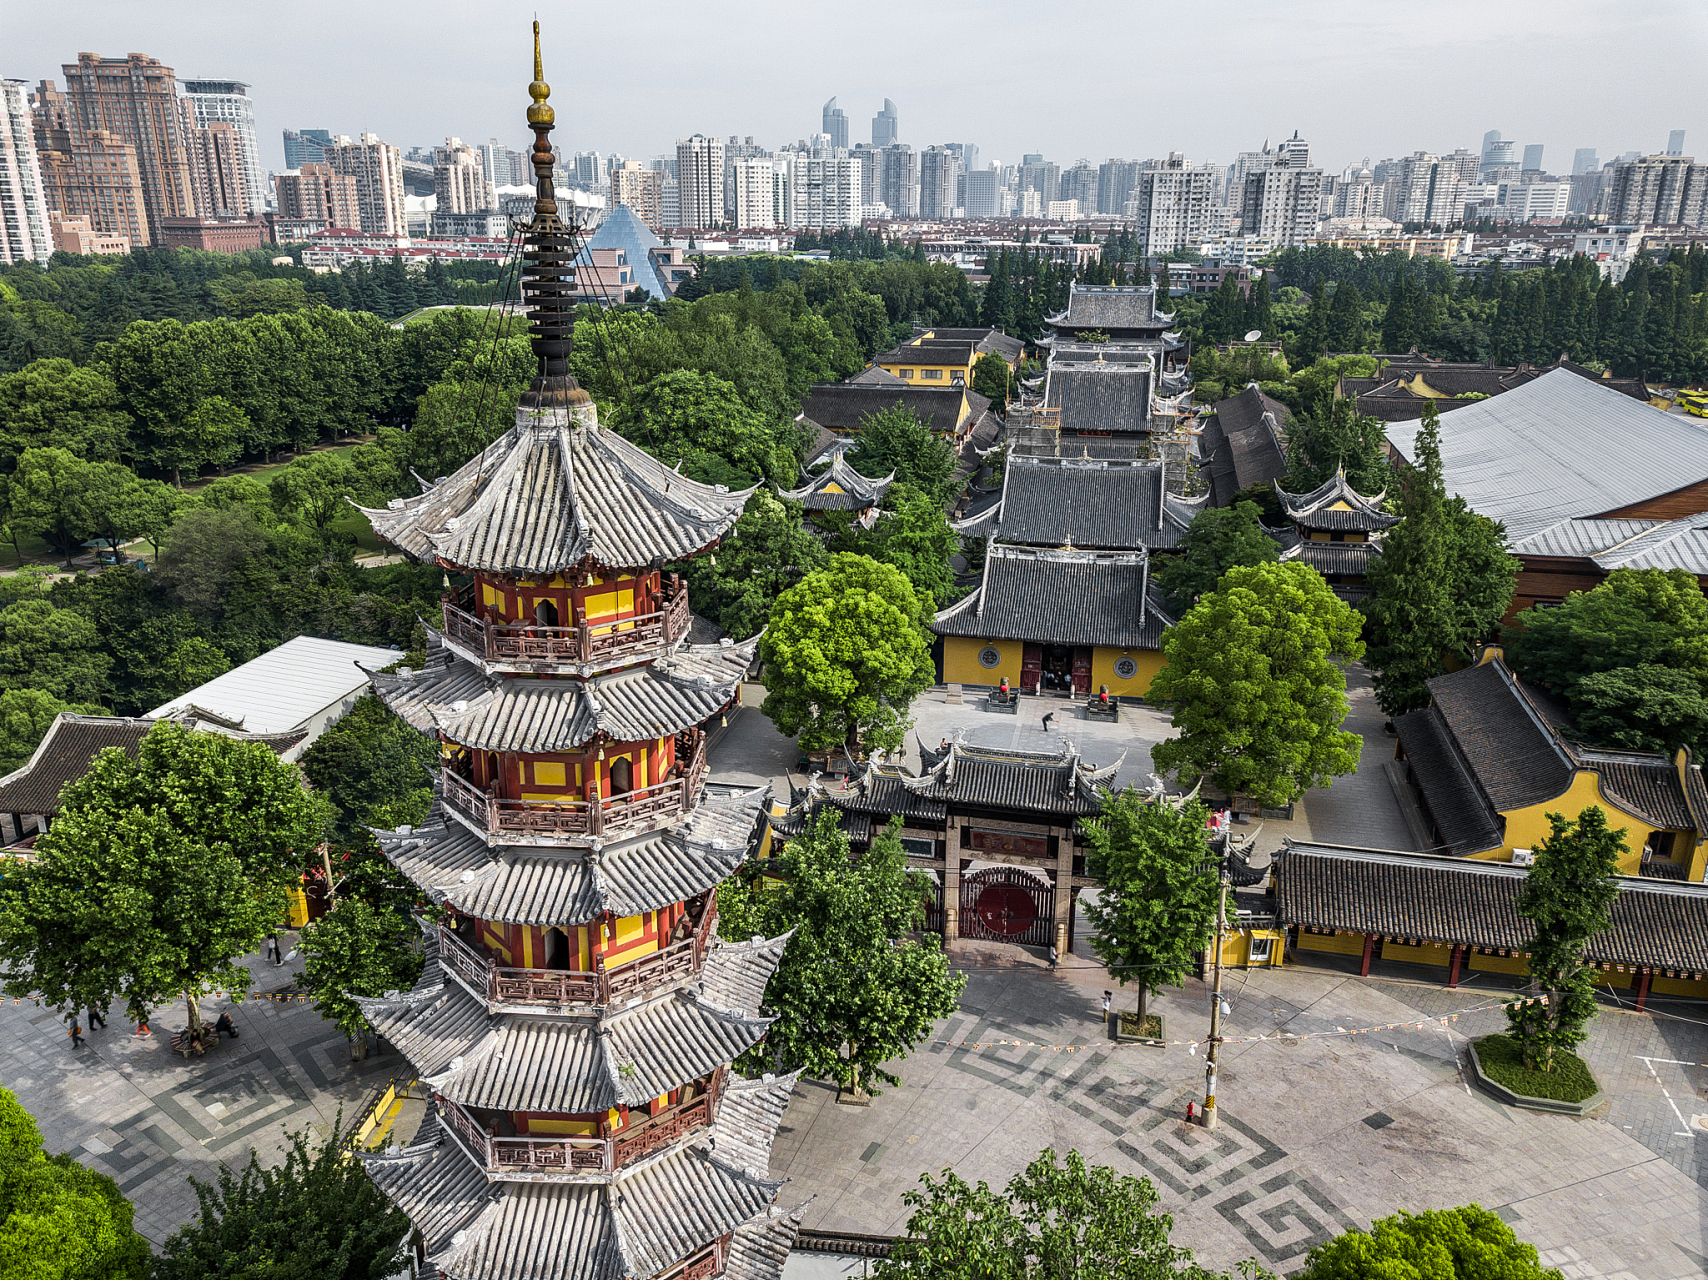 9492 说到上海的旅游景点,龙华寺可是个不得不去的好地方!